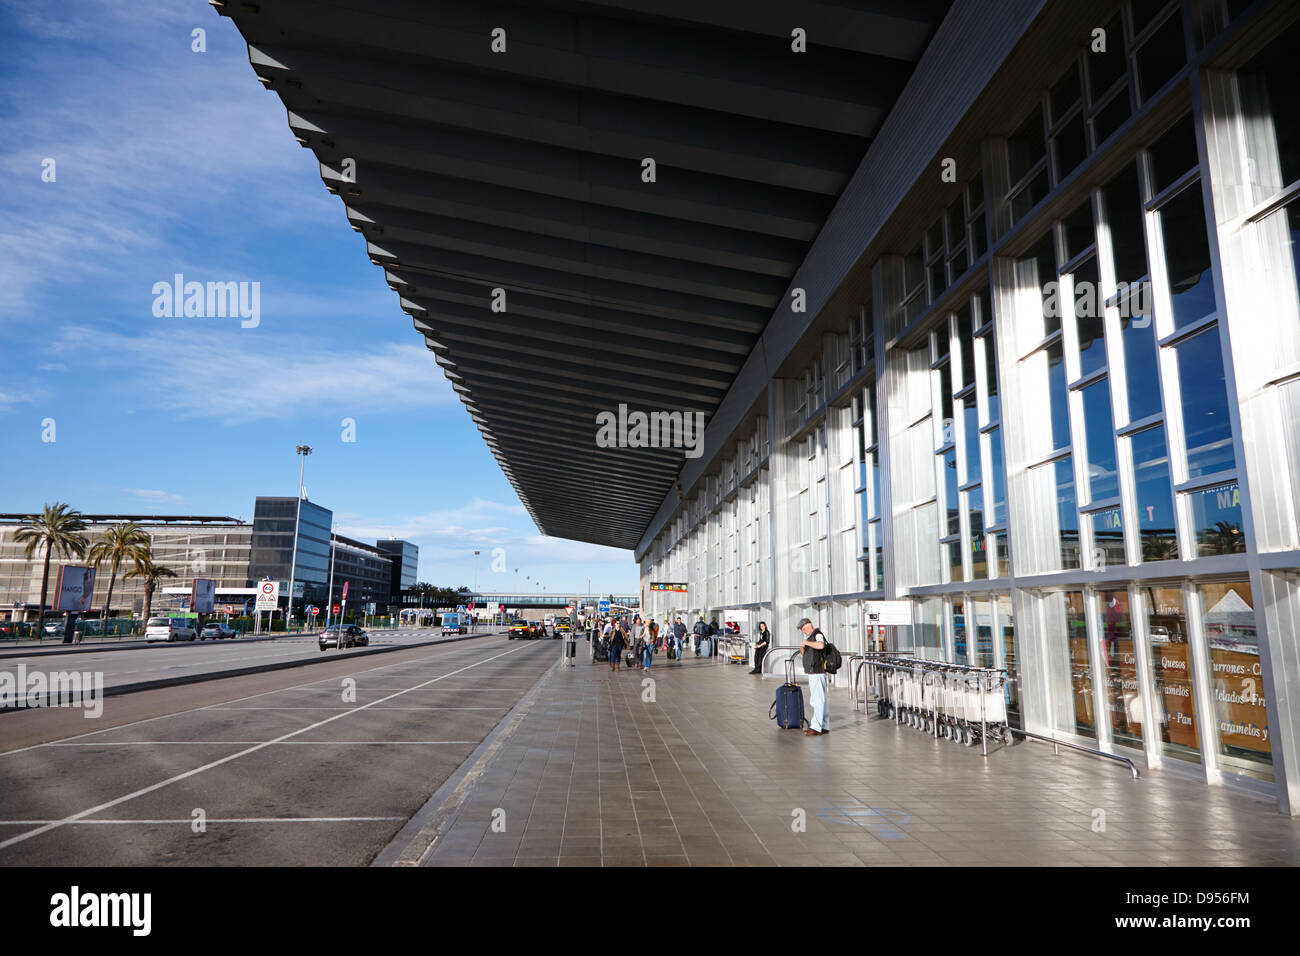 Terminal de l'aéroport El Prat de barcelone catalogne espagne 2 Banque D'Images